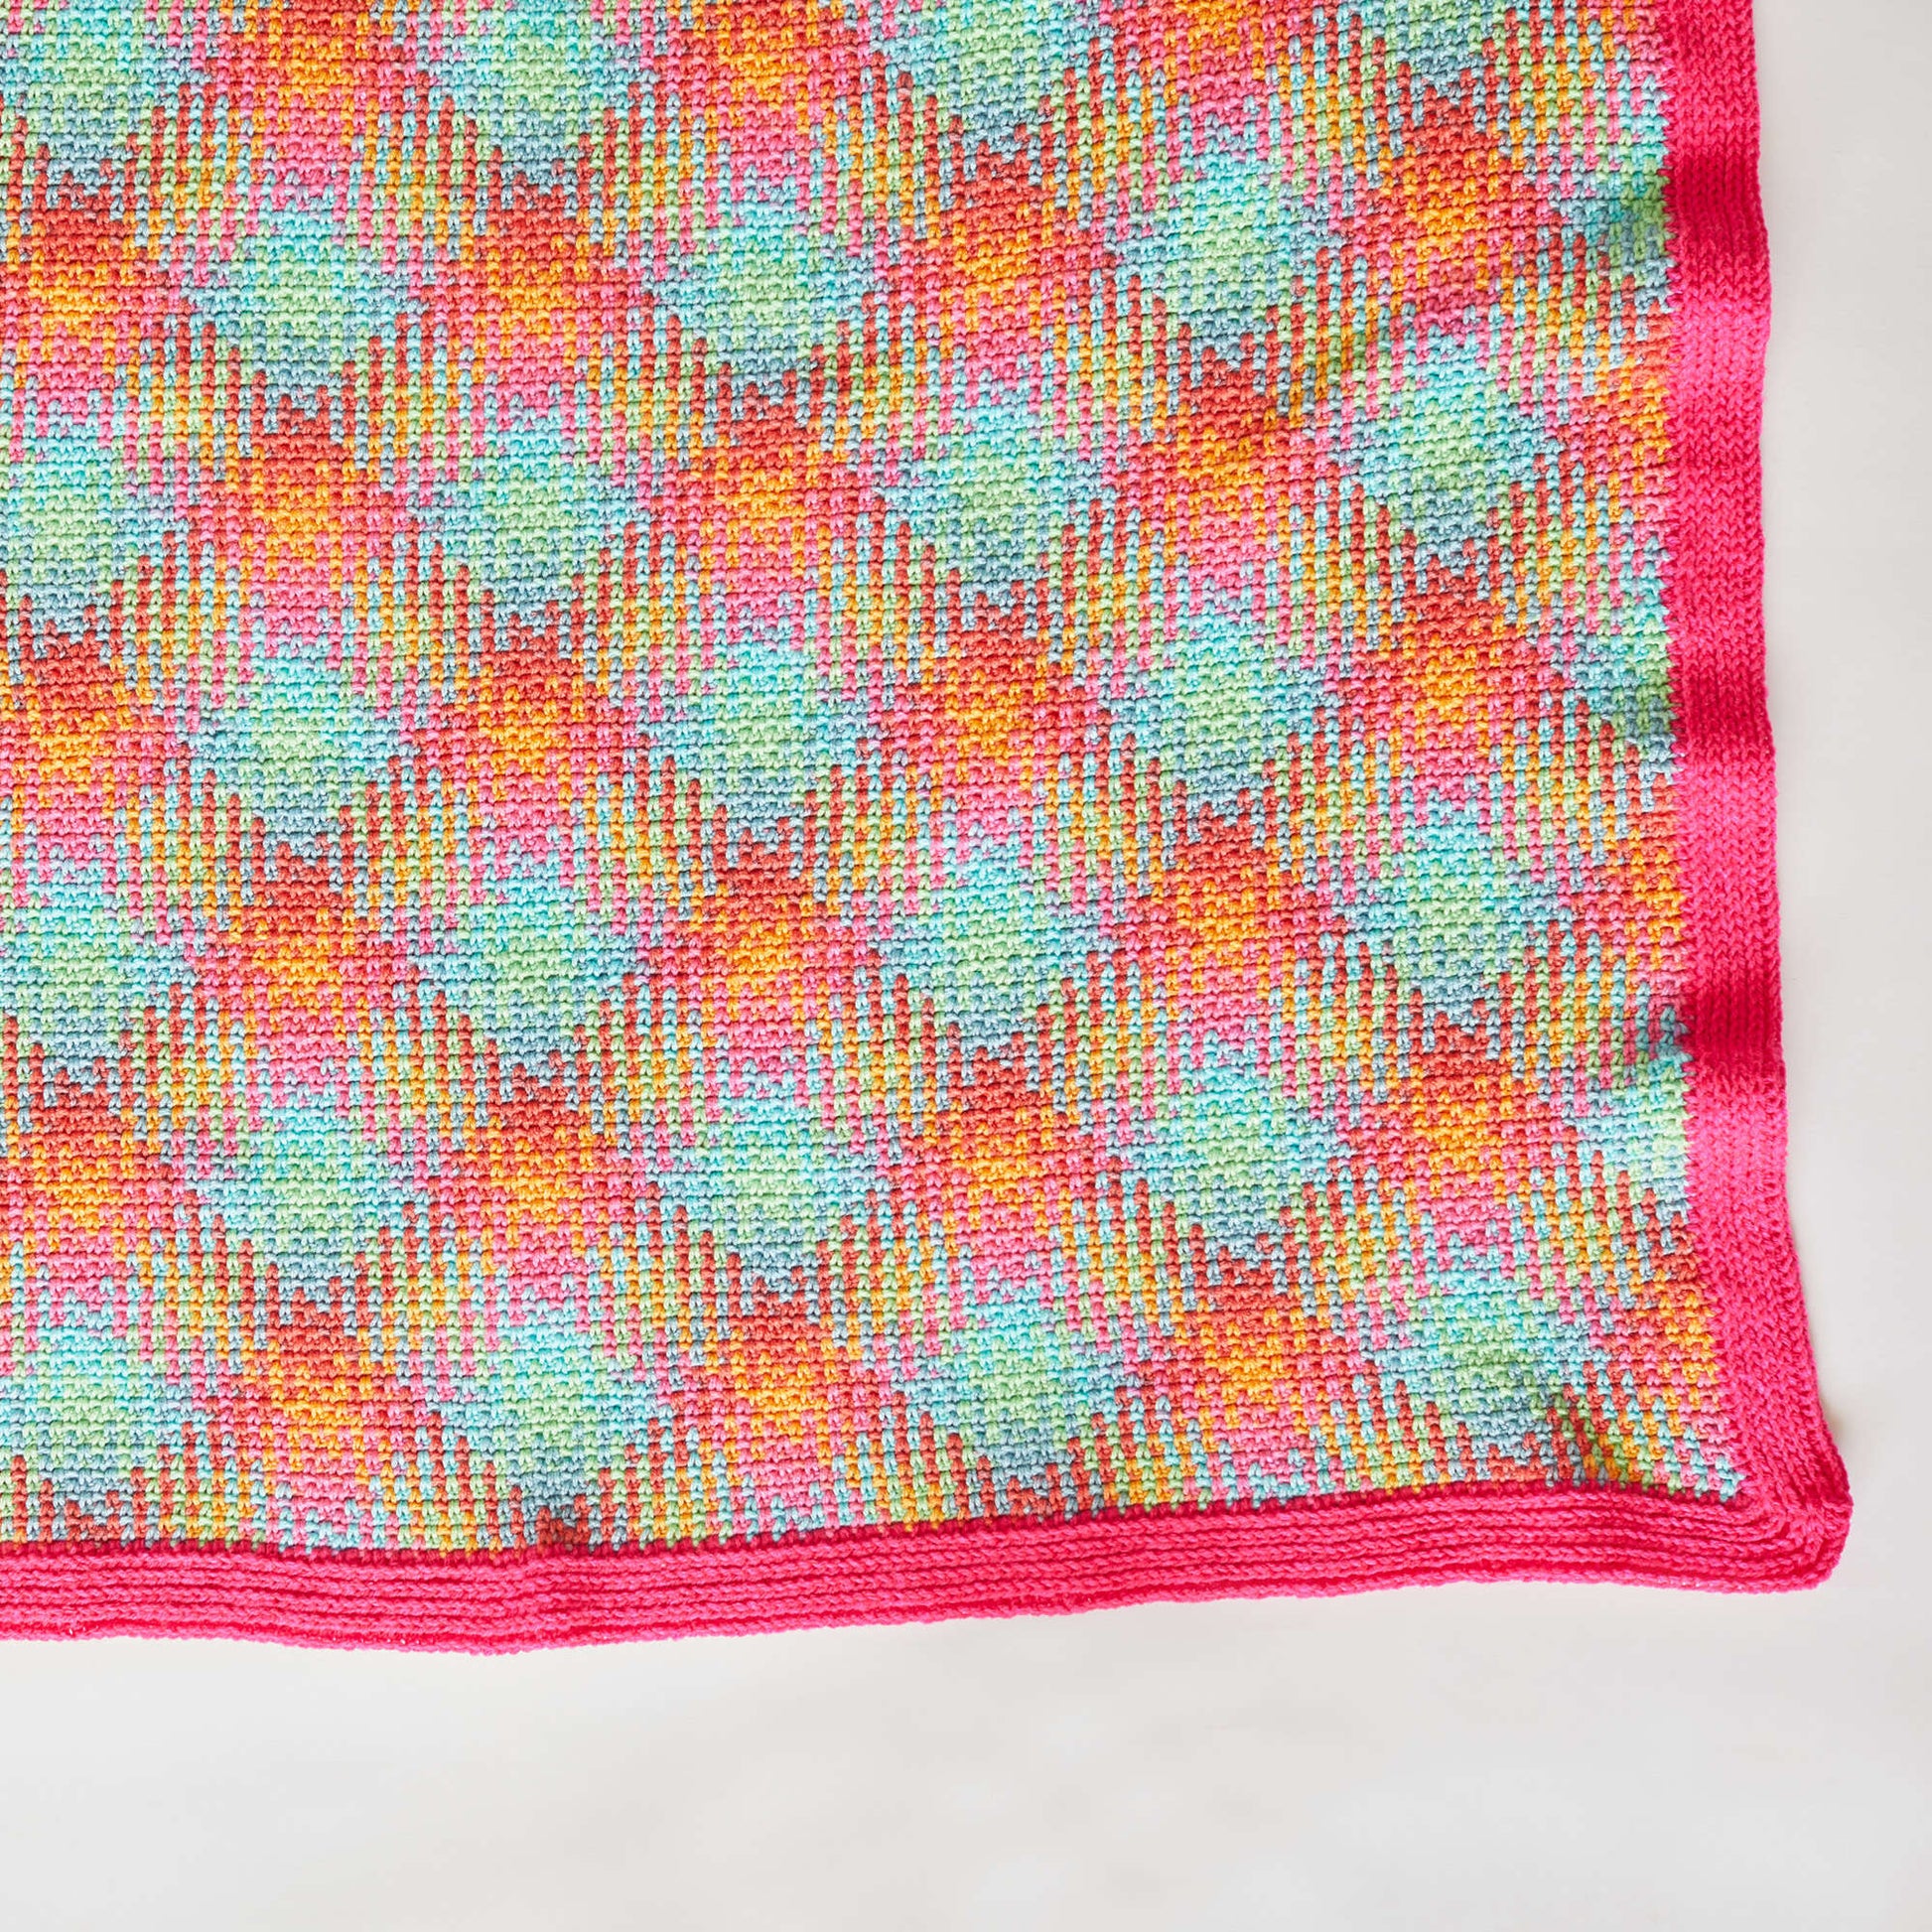 Free Red Heart Happy Planned Pooling Crochet Blanket Pattern